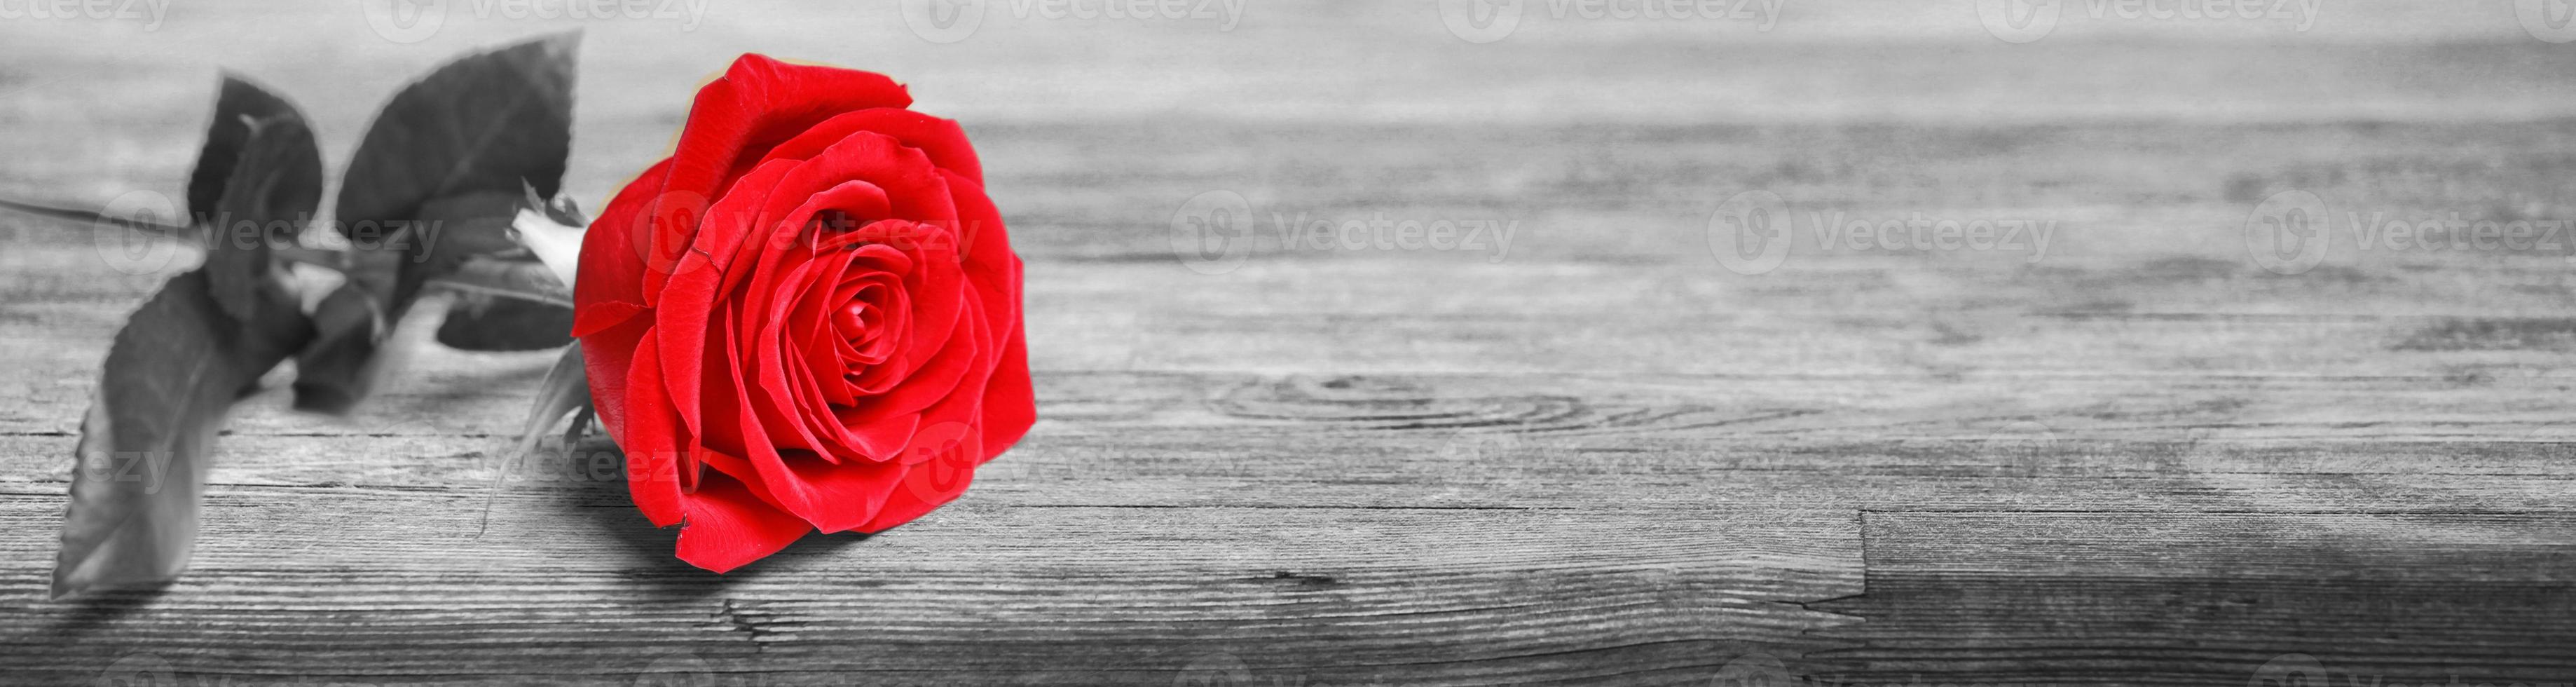 belle rose rouge. fond de félicitations par st. La Saint-Valentin photo